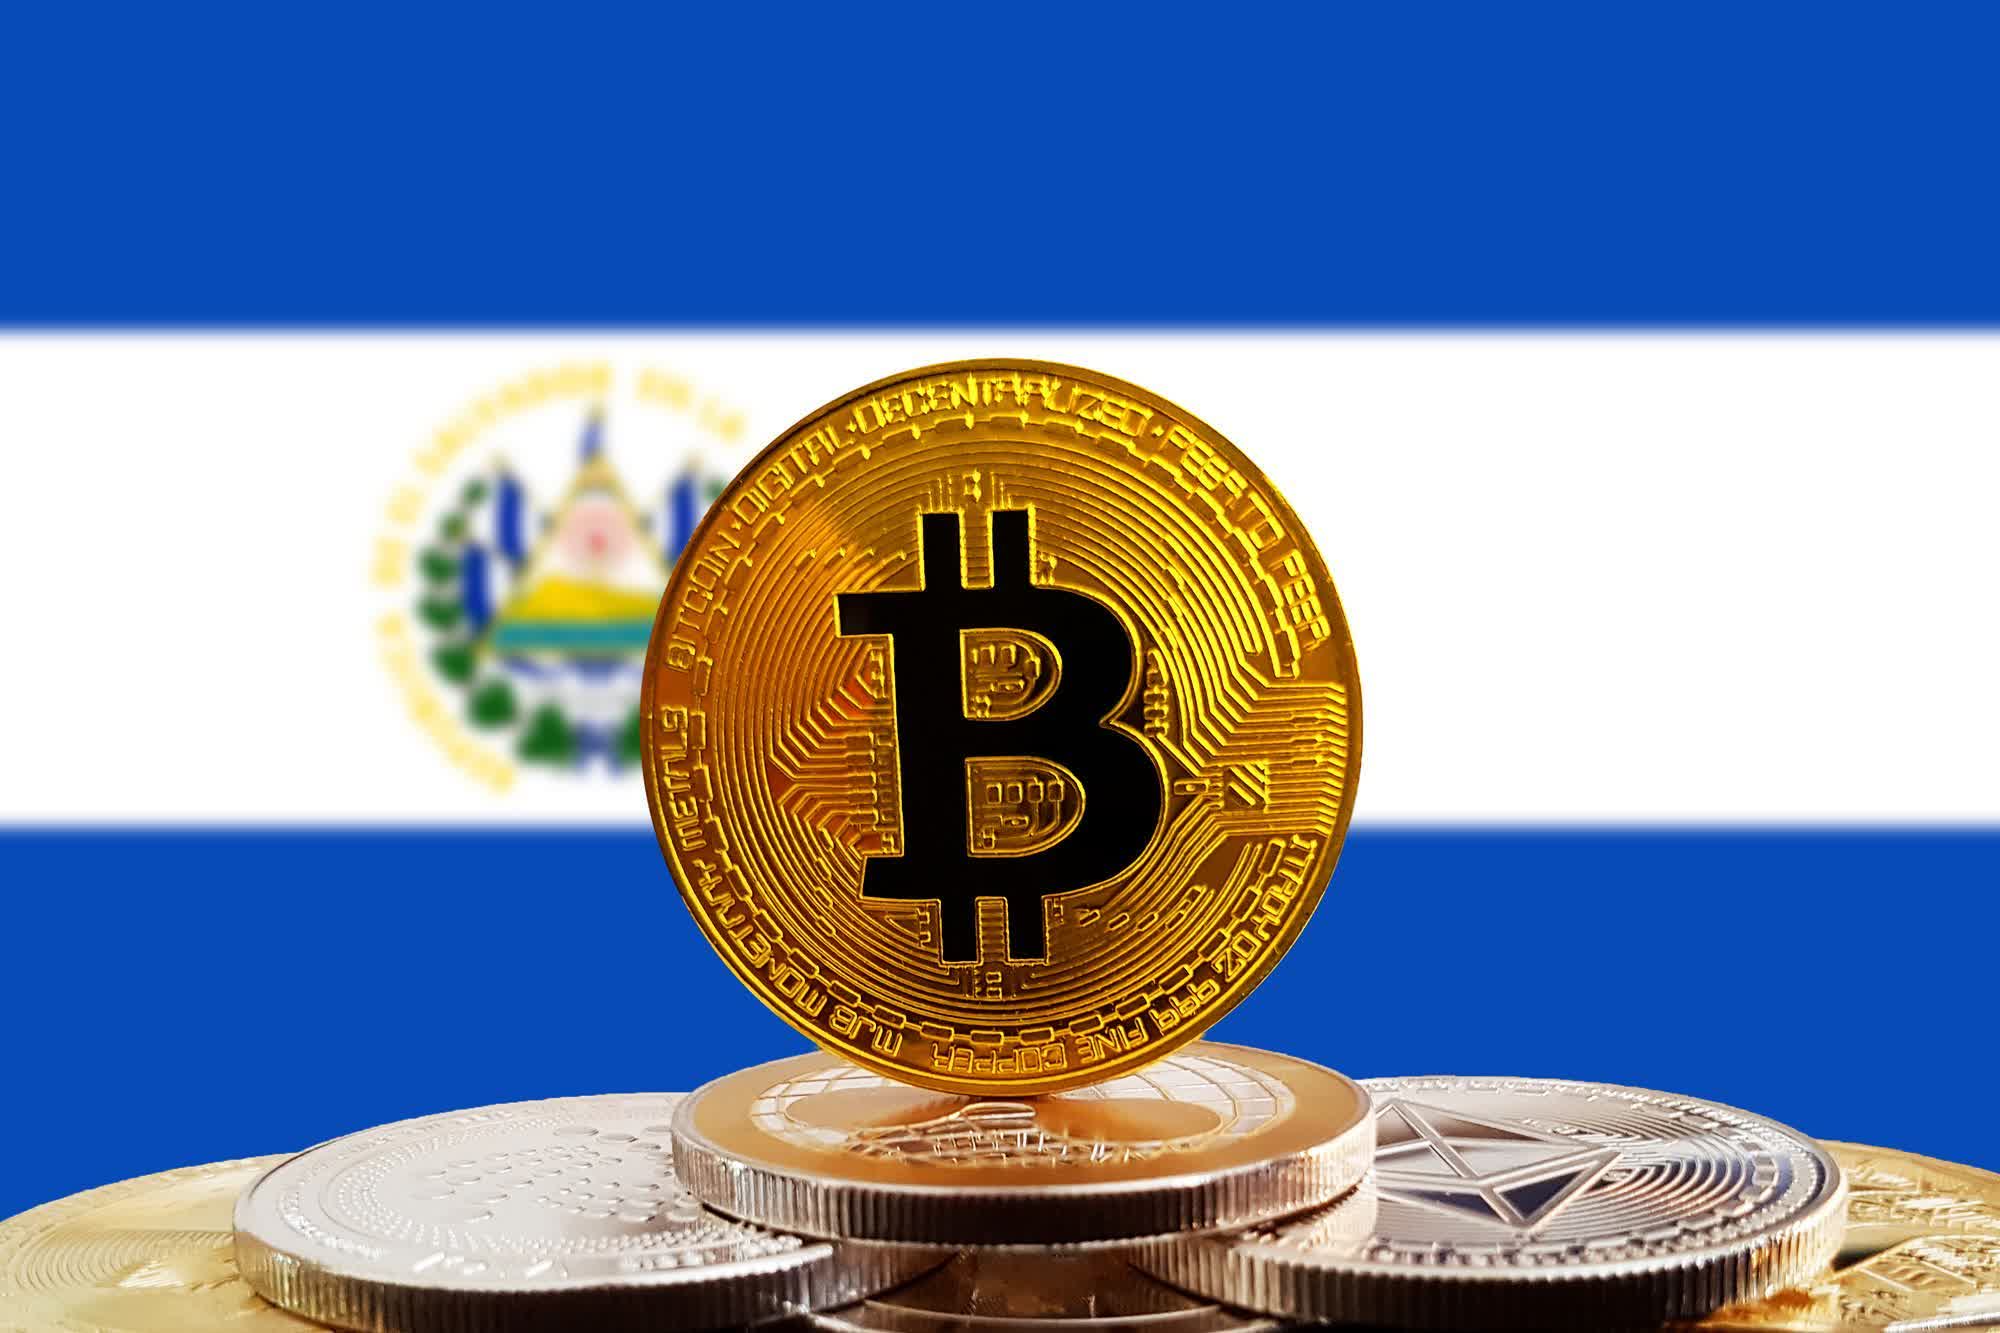 Crypto crash could see El Salvador default on debt payments